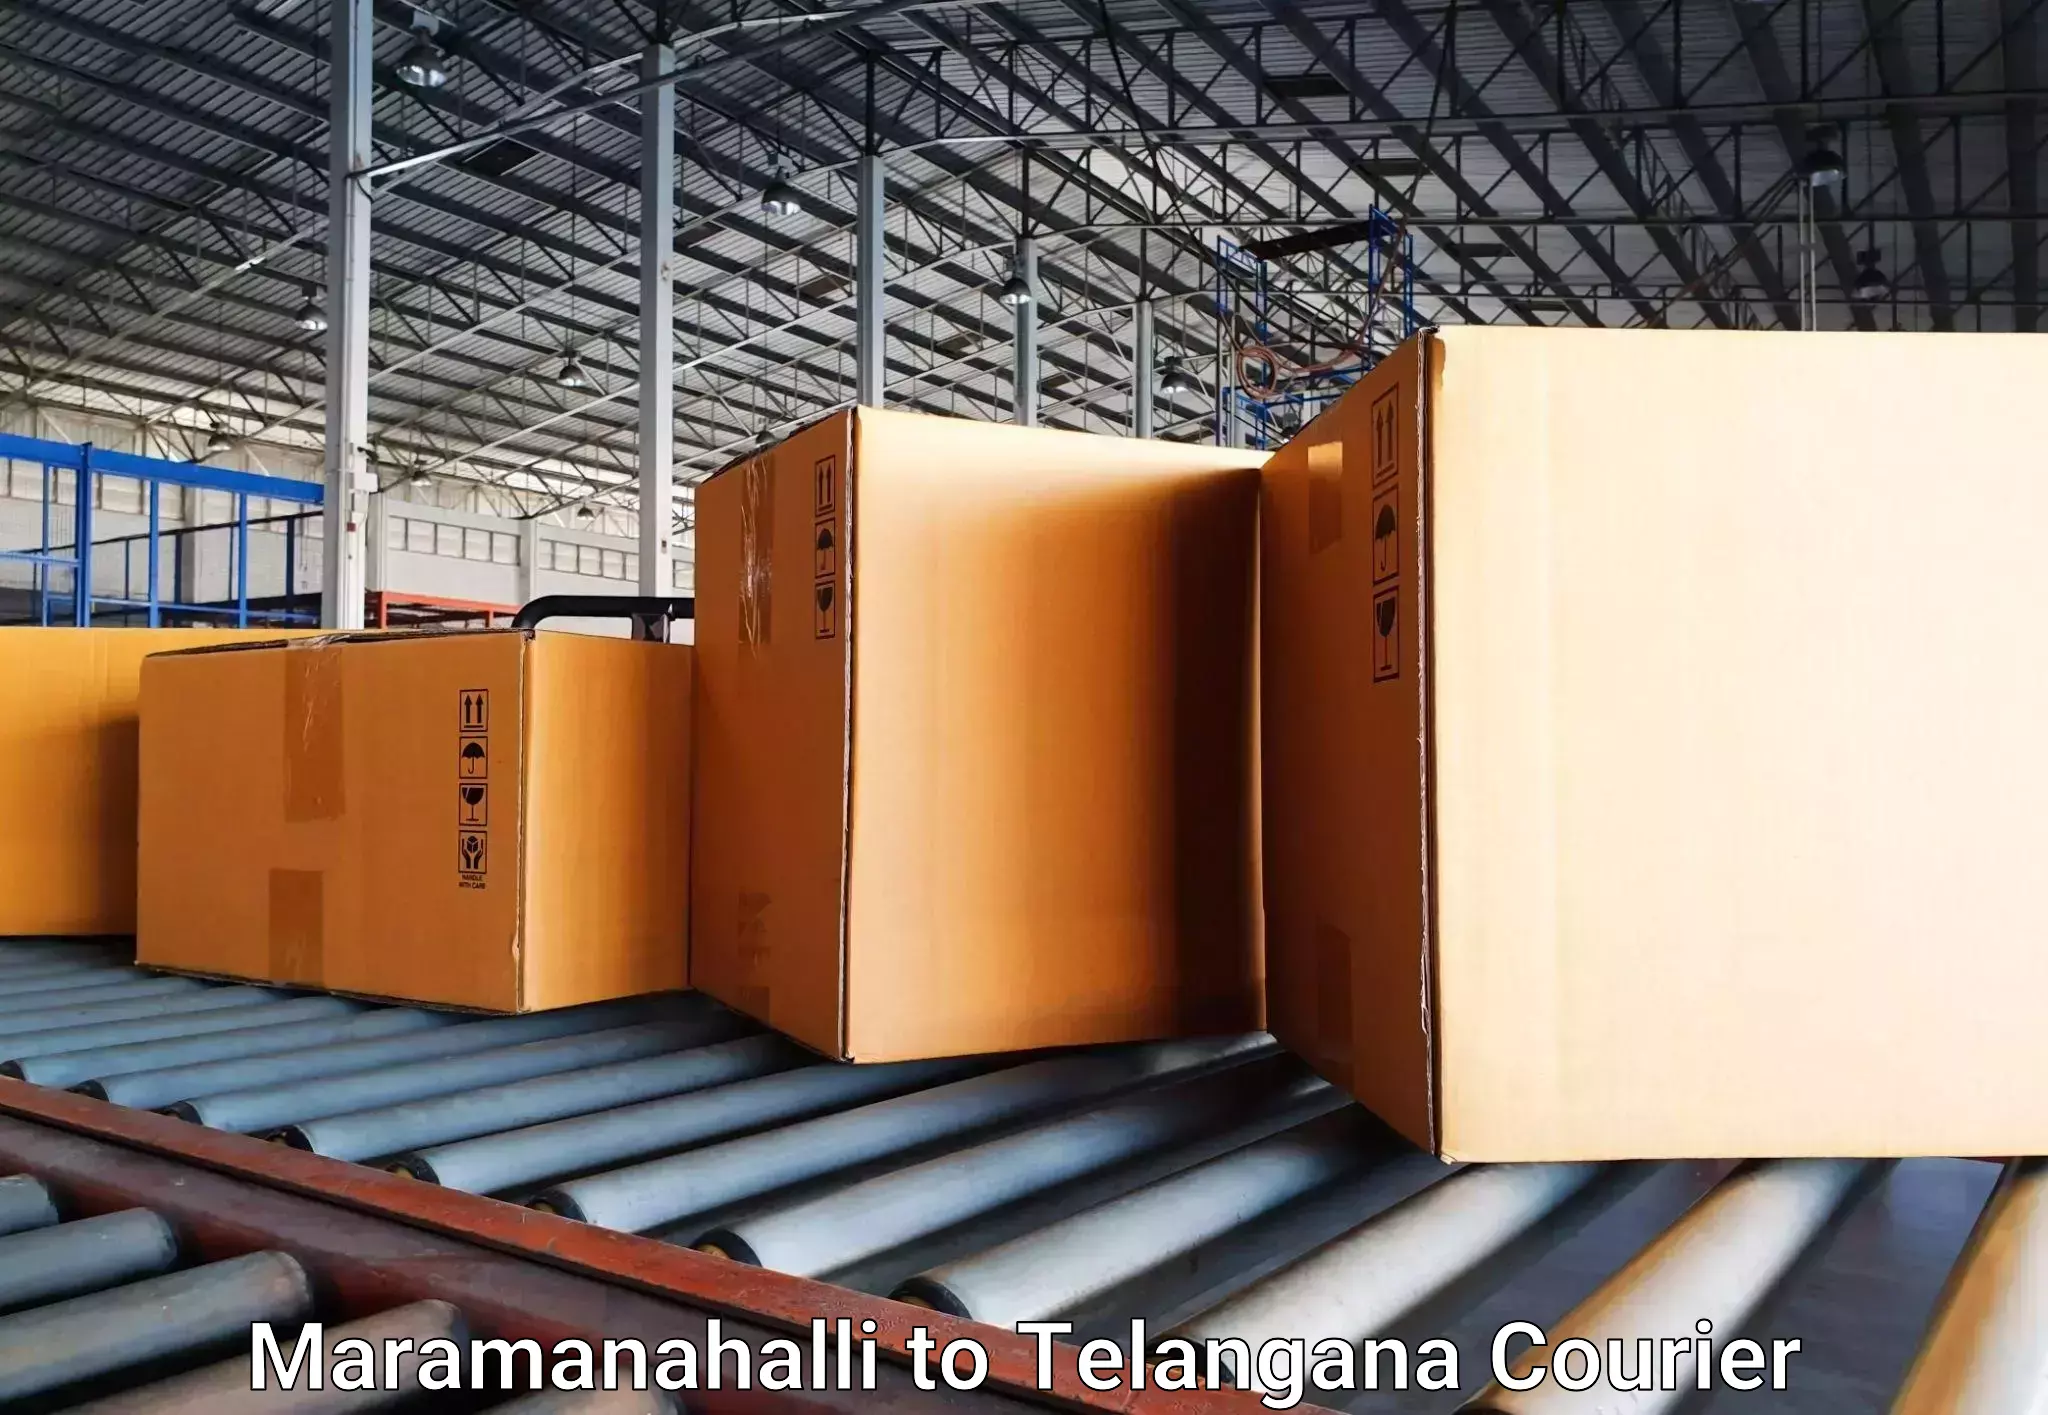 Musical instruments luggage transport Maramanahalli to Ibrahimpatnam